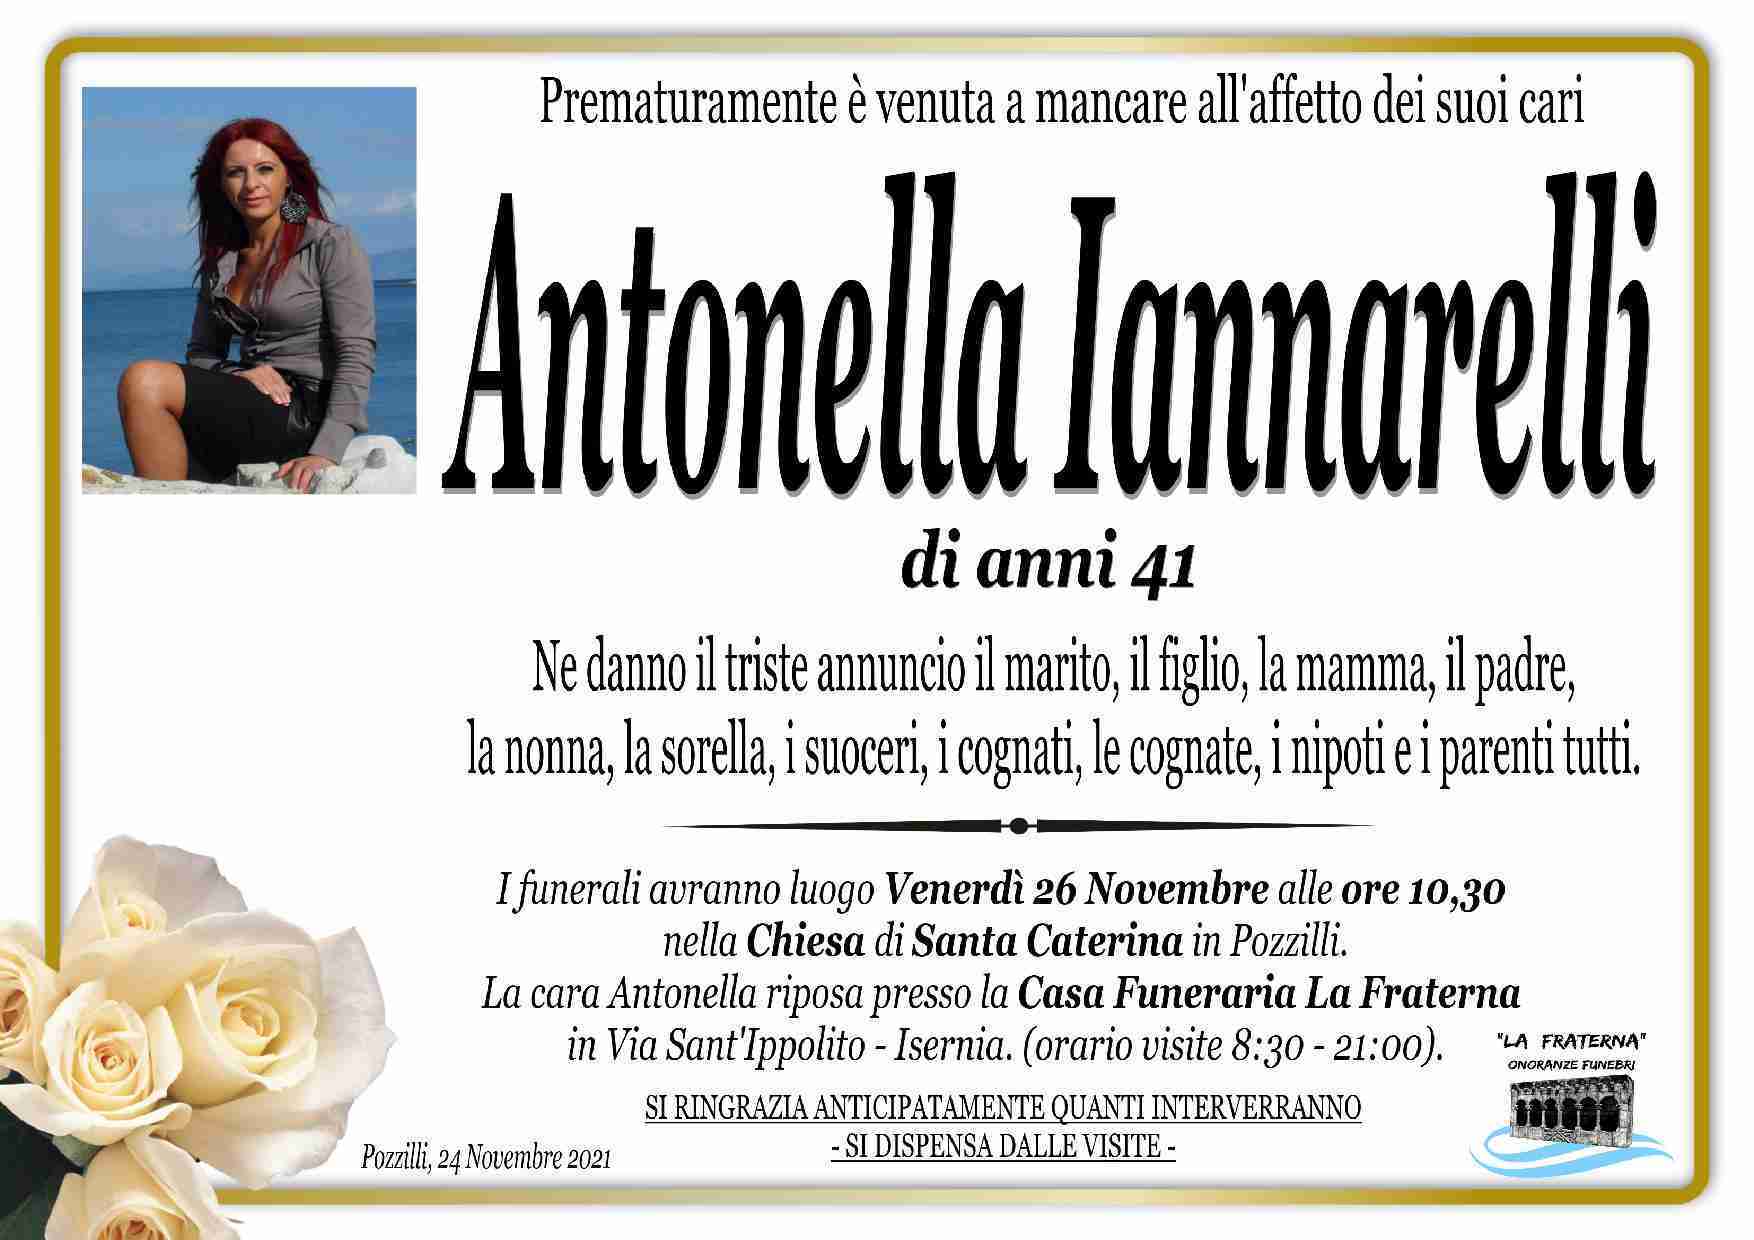 Antonella Iannarelli